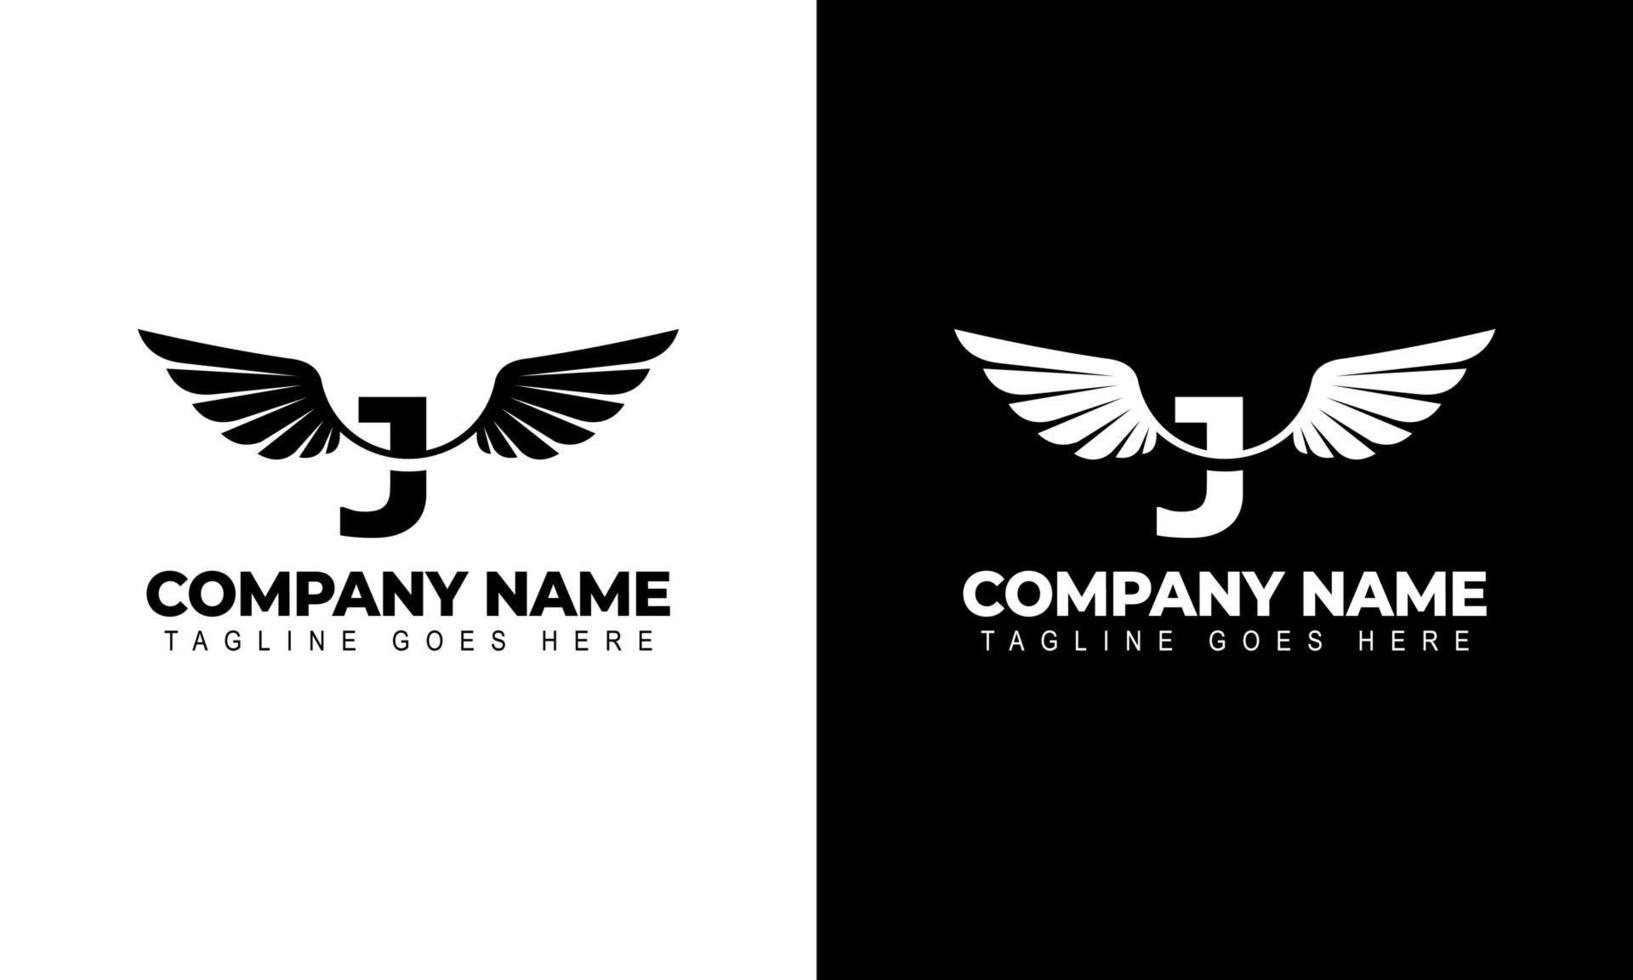 Letter J with wings logo label emblem sign stamp. Vector illustrations